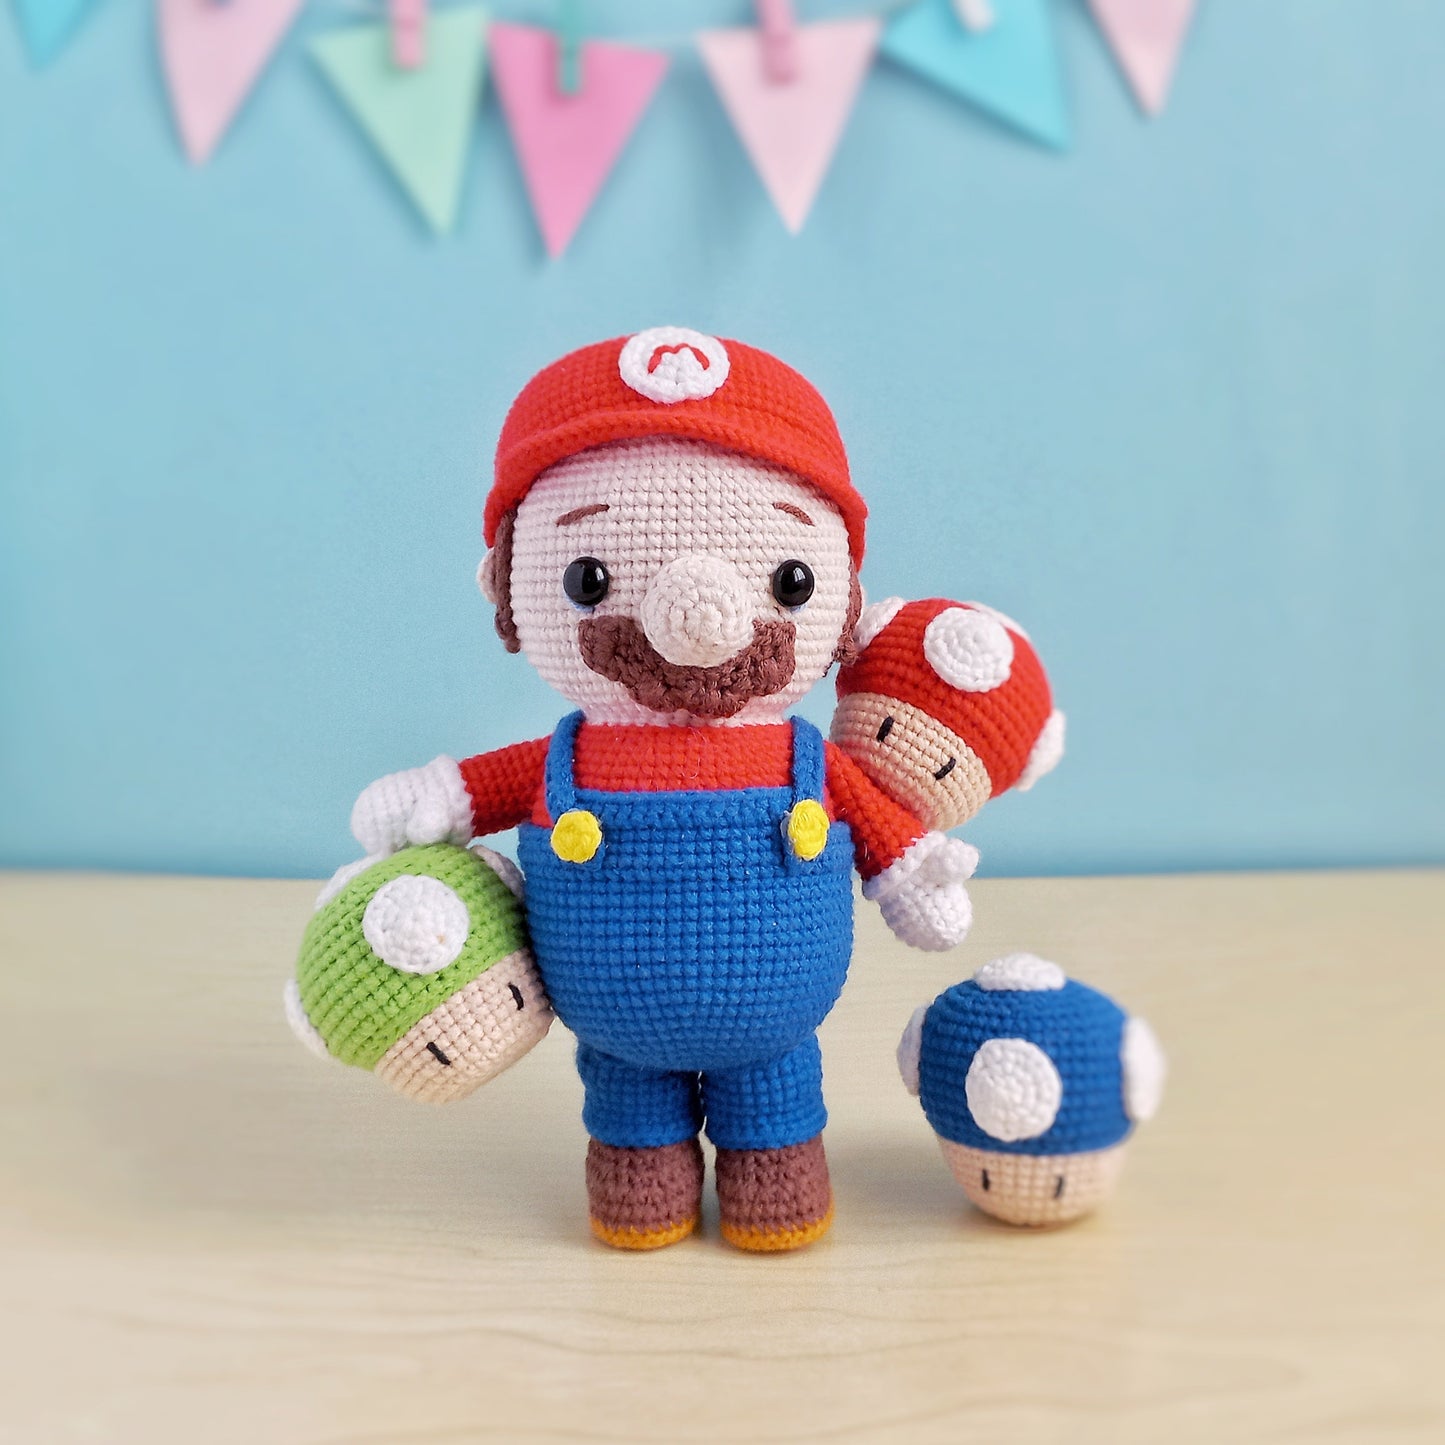 Super Mario and Yoshi